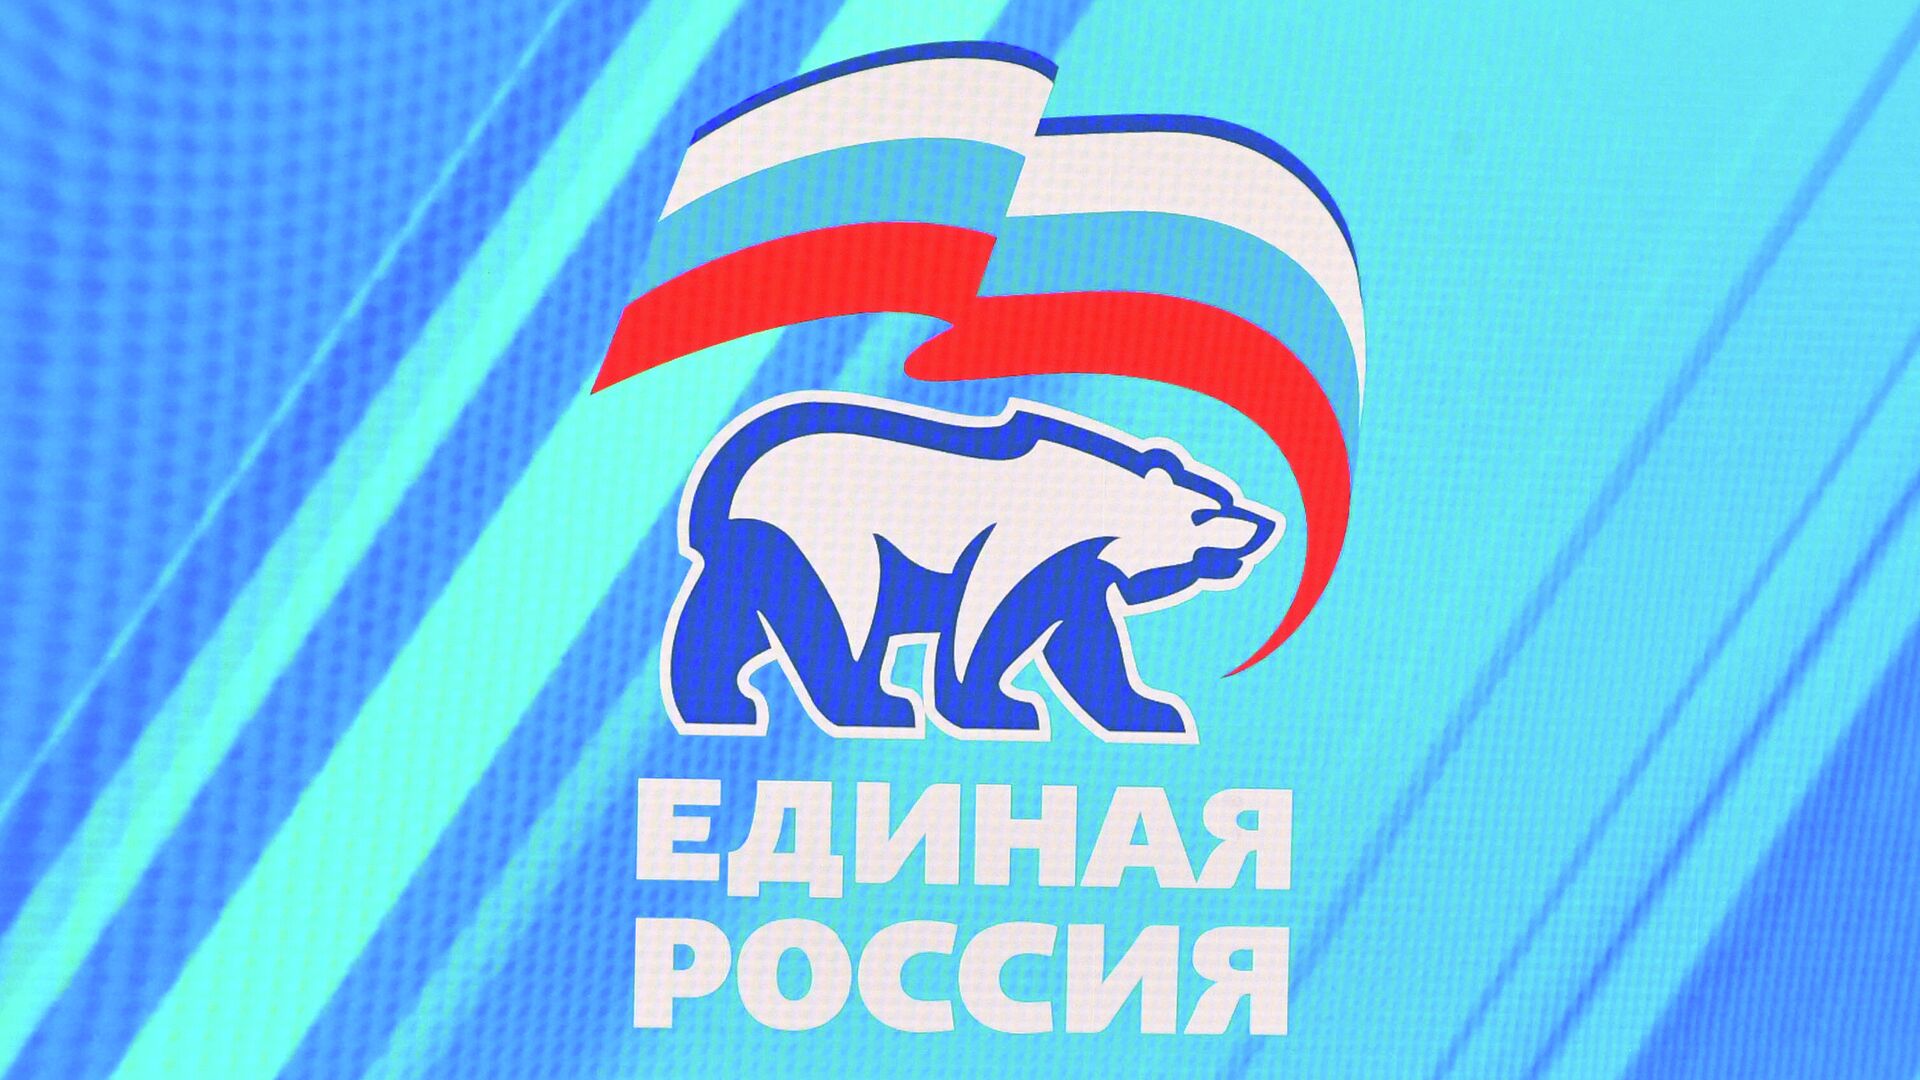 Единая россия государственная партия